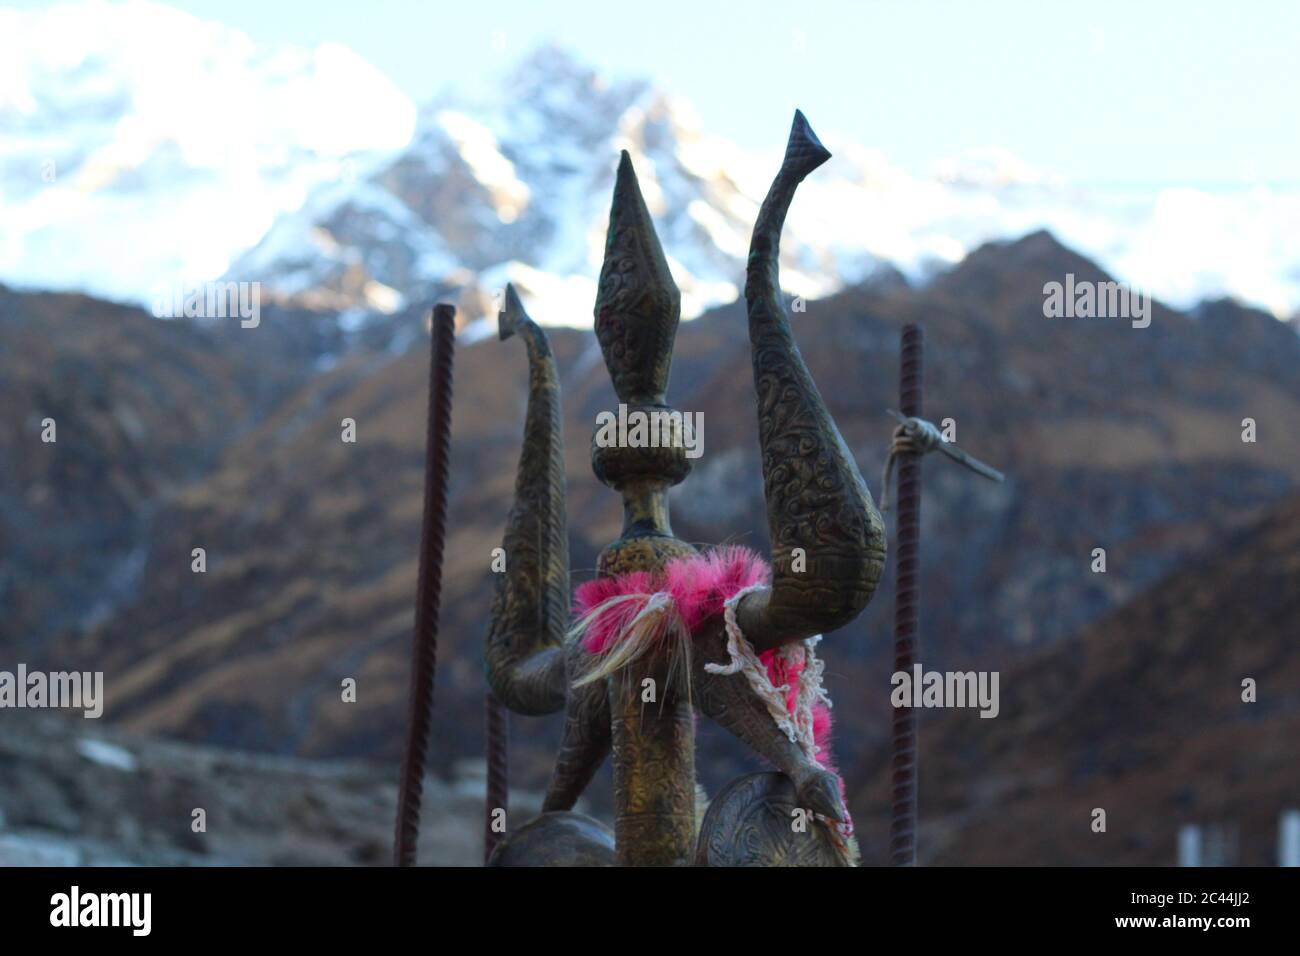 Ein Nahaufnahme Bild von Trishula (Waffe von lord shiva), mit einem verschwommenen Himalaya-Gipfel dahinter. Stockfoto